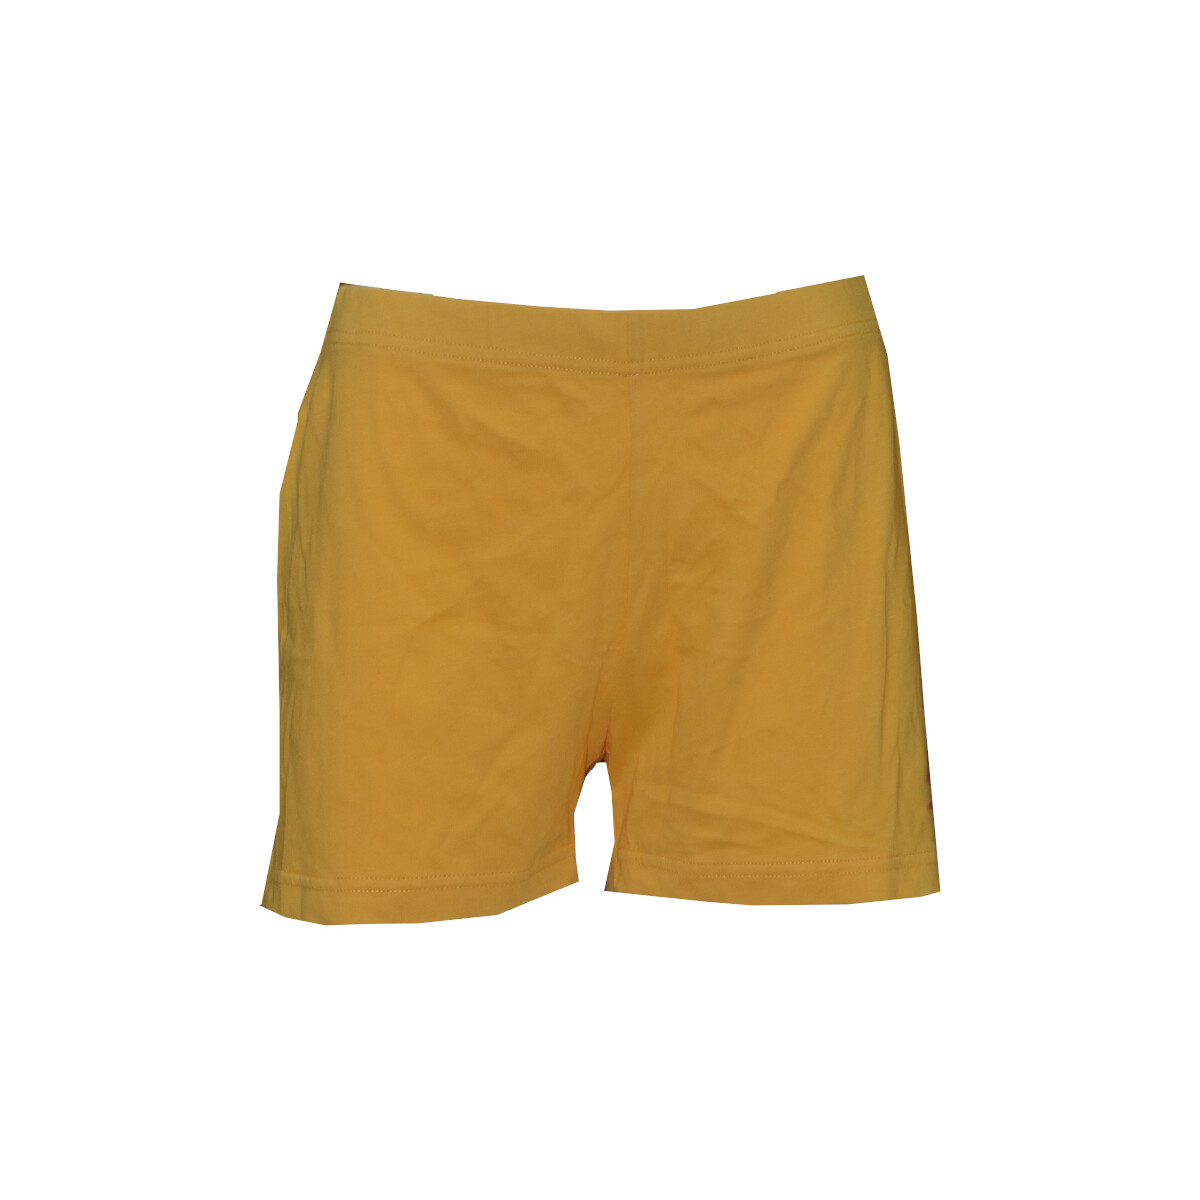 Textil Mulher Shorts / Bermudas Fila 6000445 Amarelo